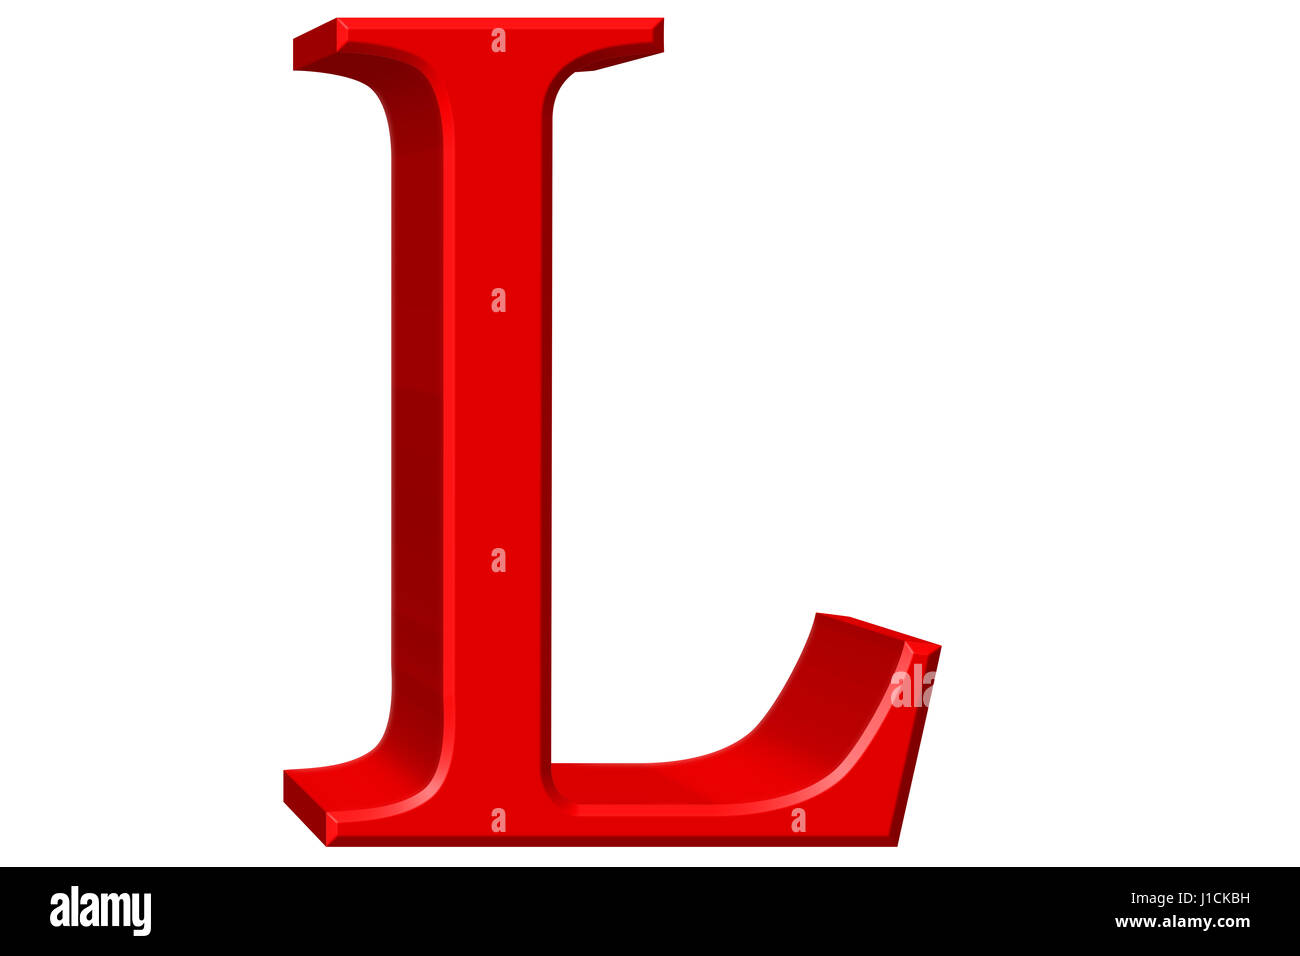 https://c8.alamy.com/comp/J1CKBH/uppercase-letter-l-isolated-on-white-3d-illustration-J1CKBH.jpg